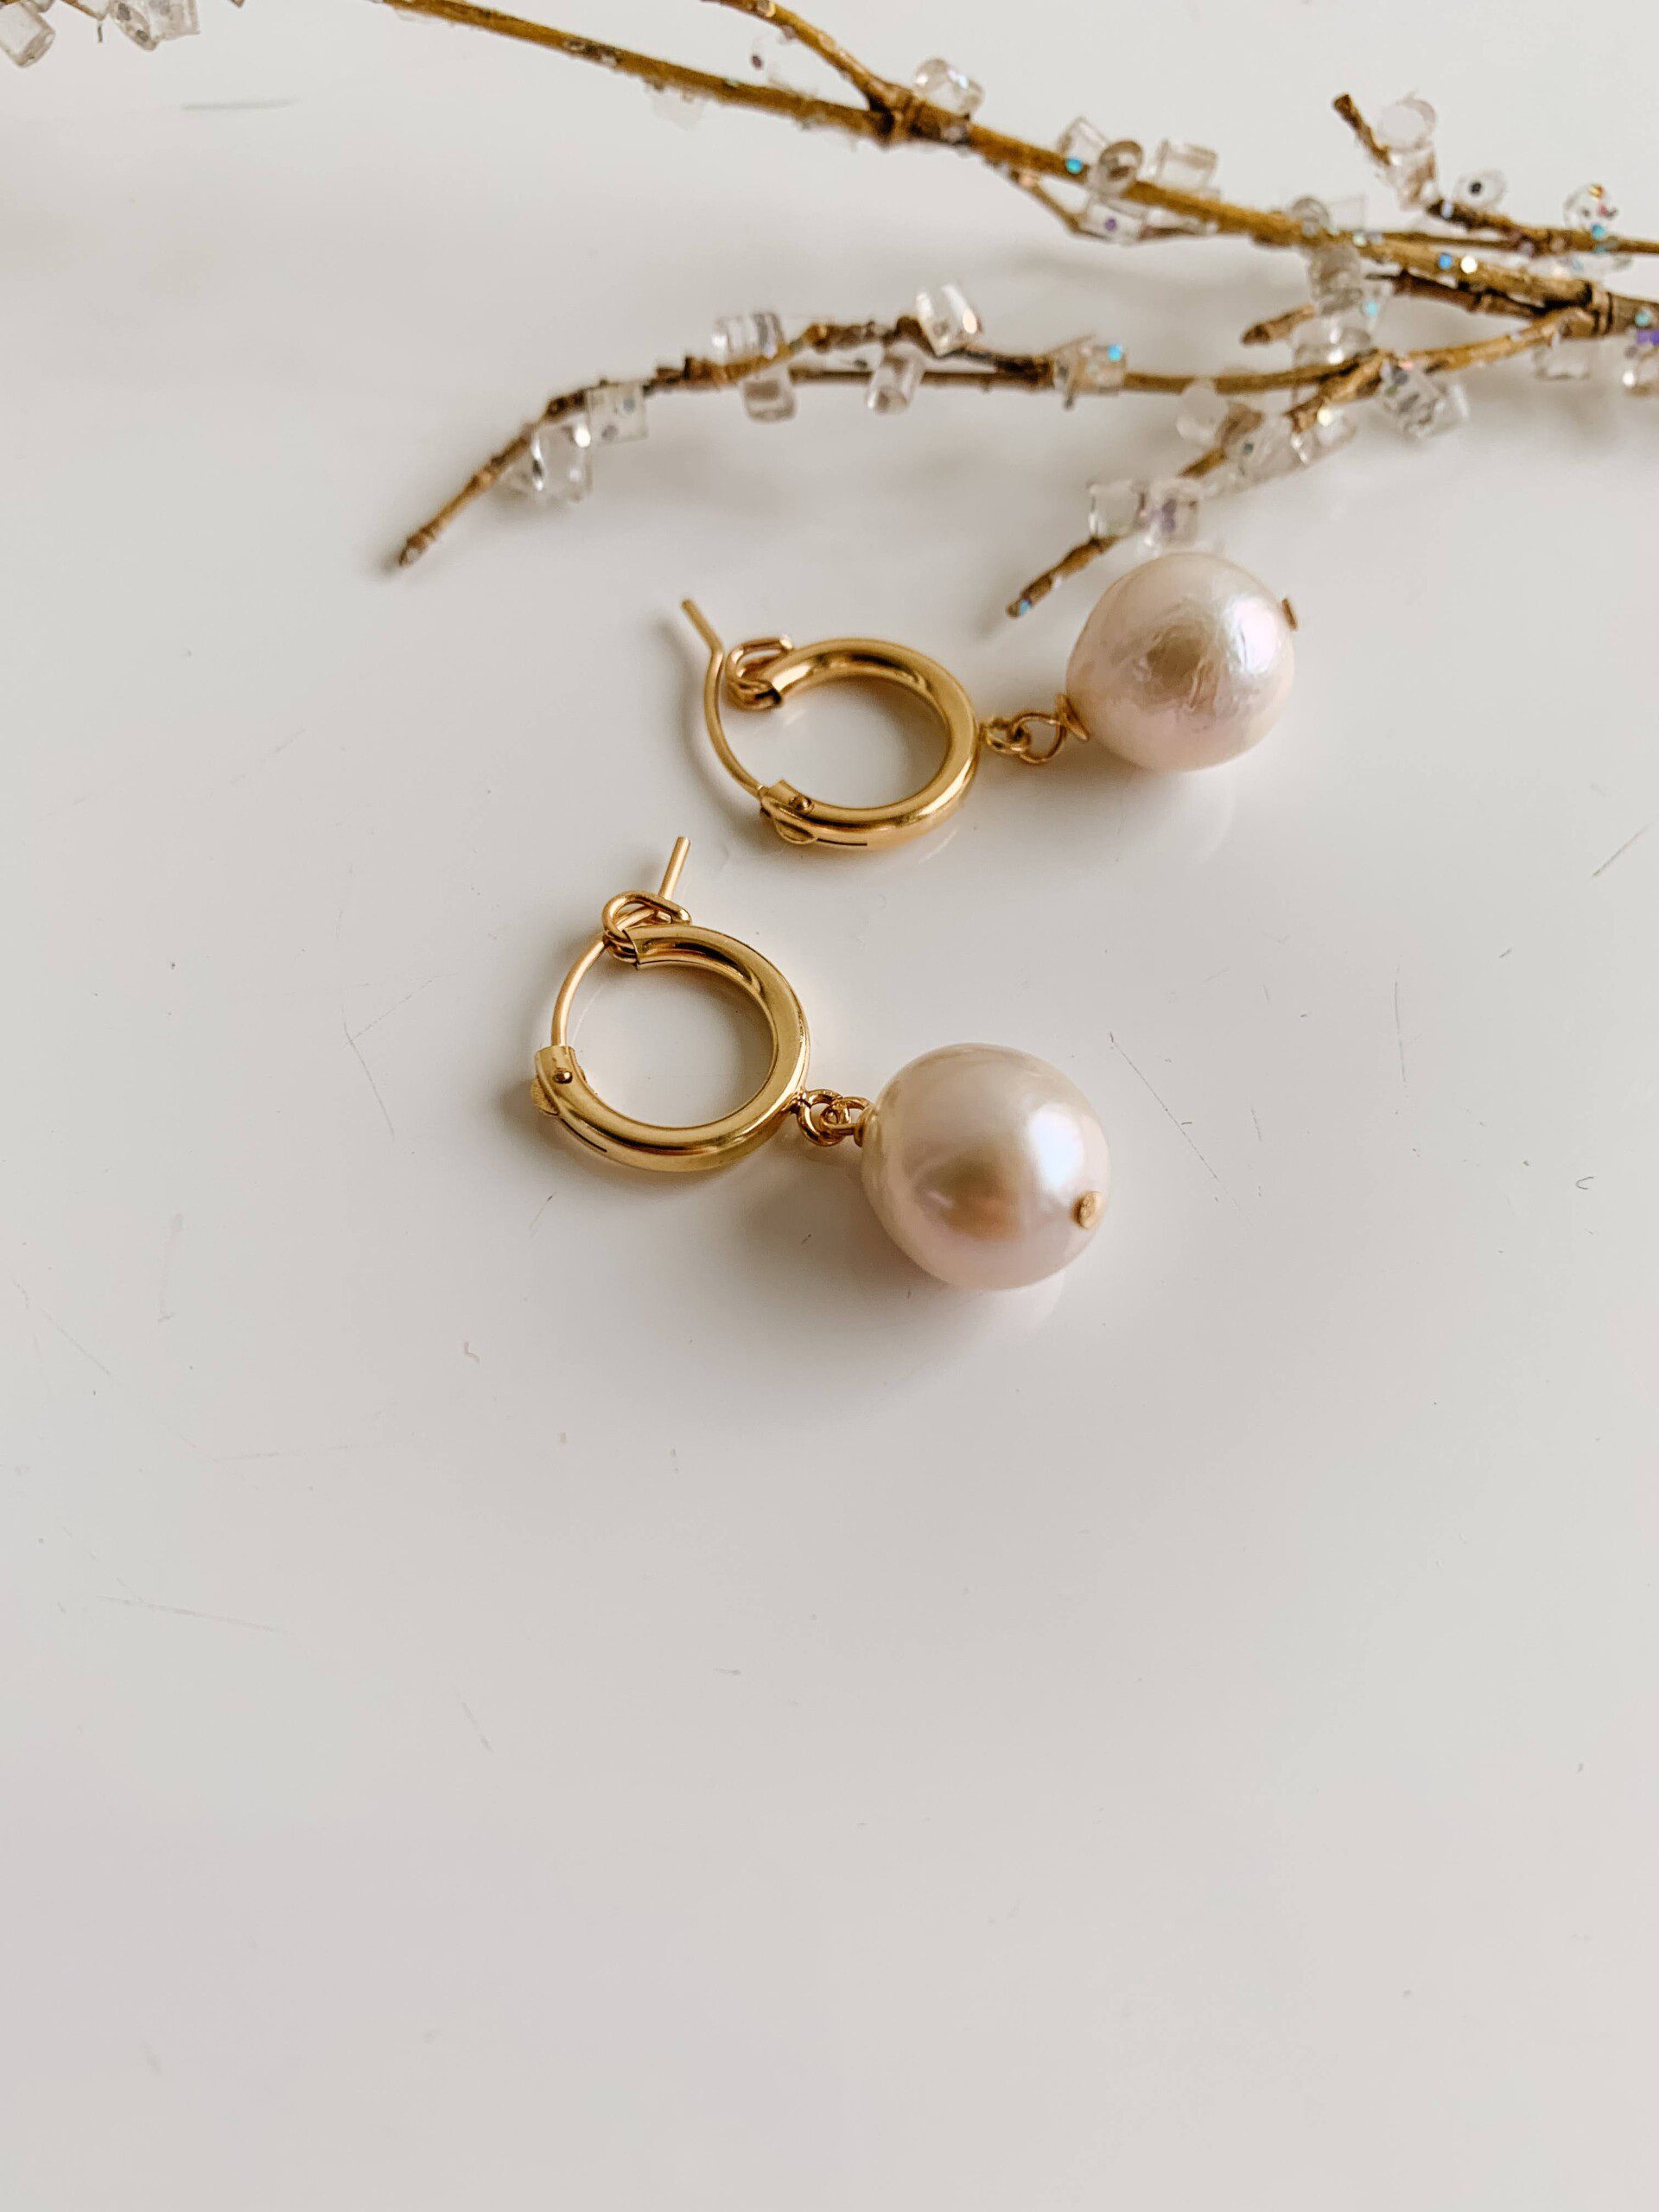 A pair of gold huggie hoop earrings with pearl drop